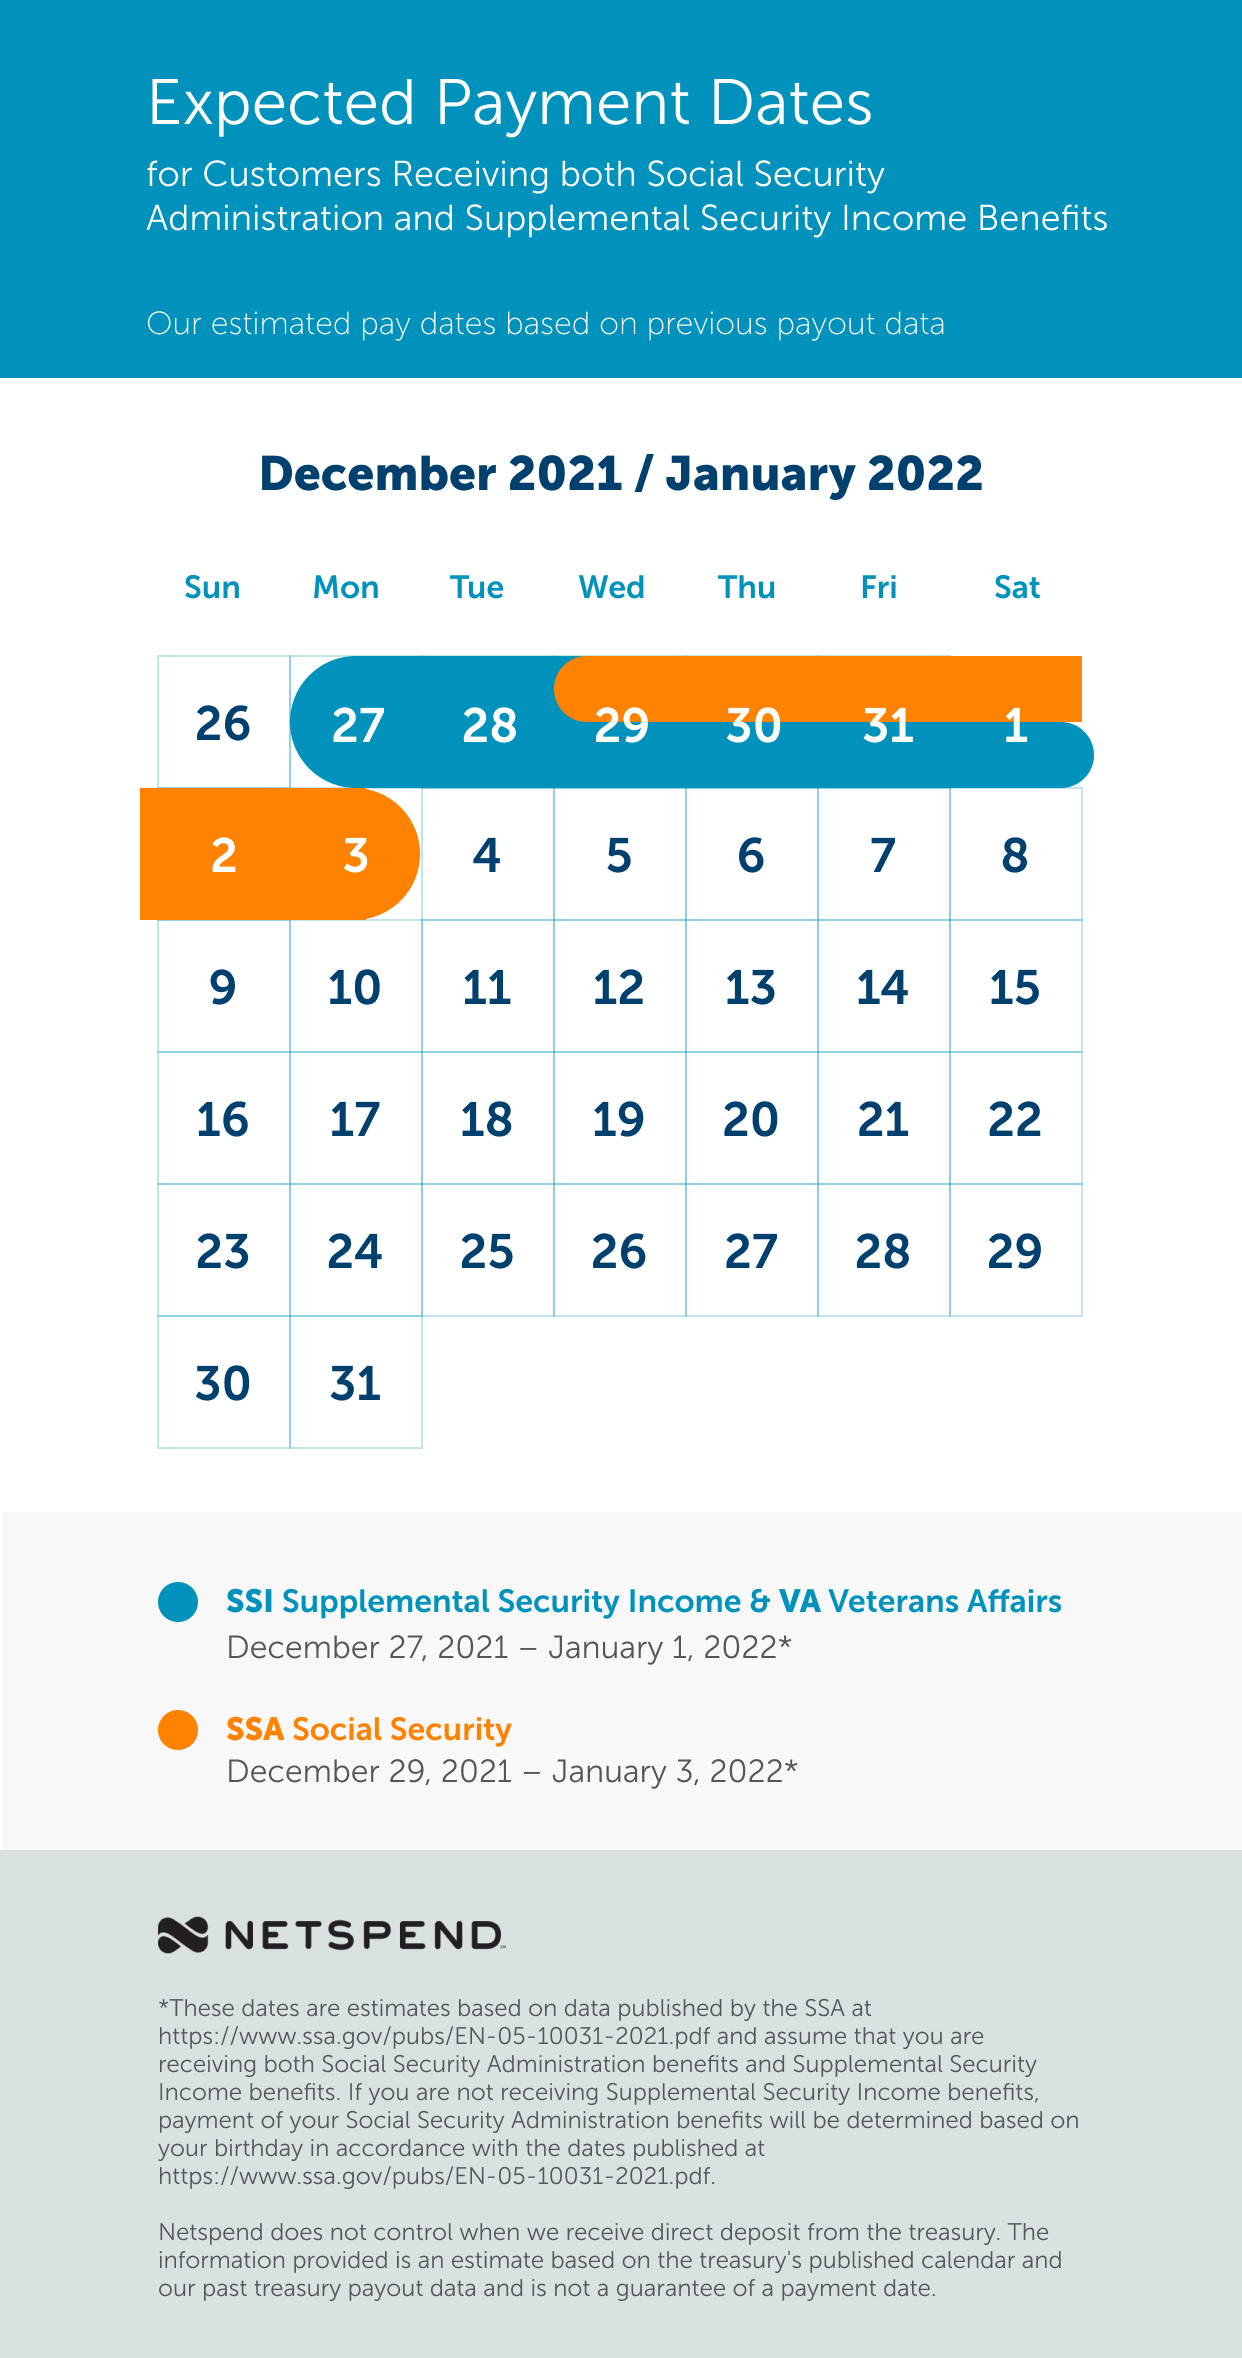 Netspend Calendar 2022 Benefits Payment Schedule: December 2021 - January 2022